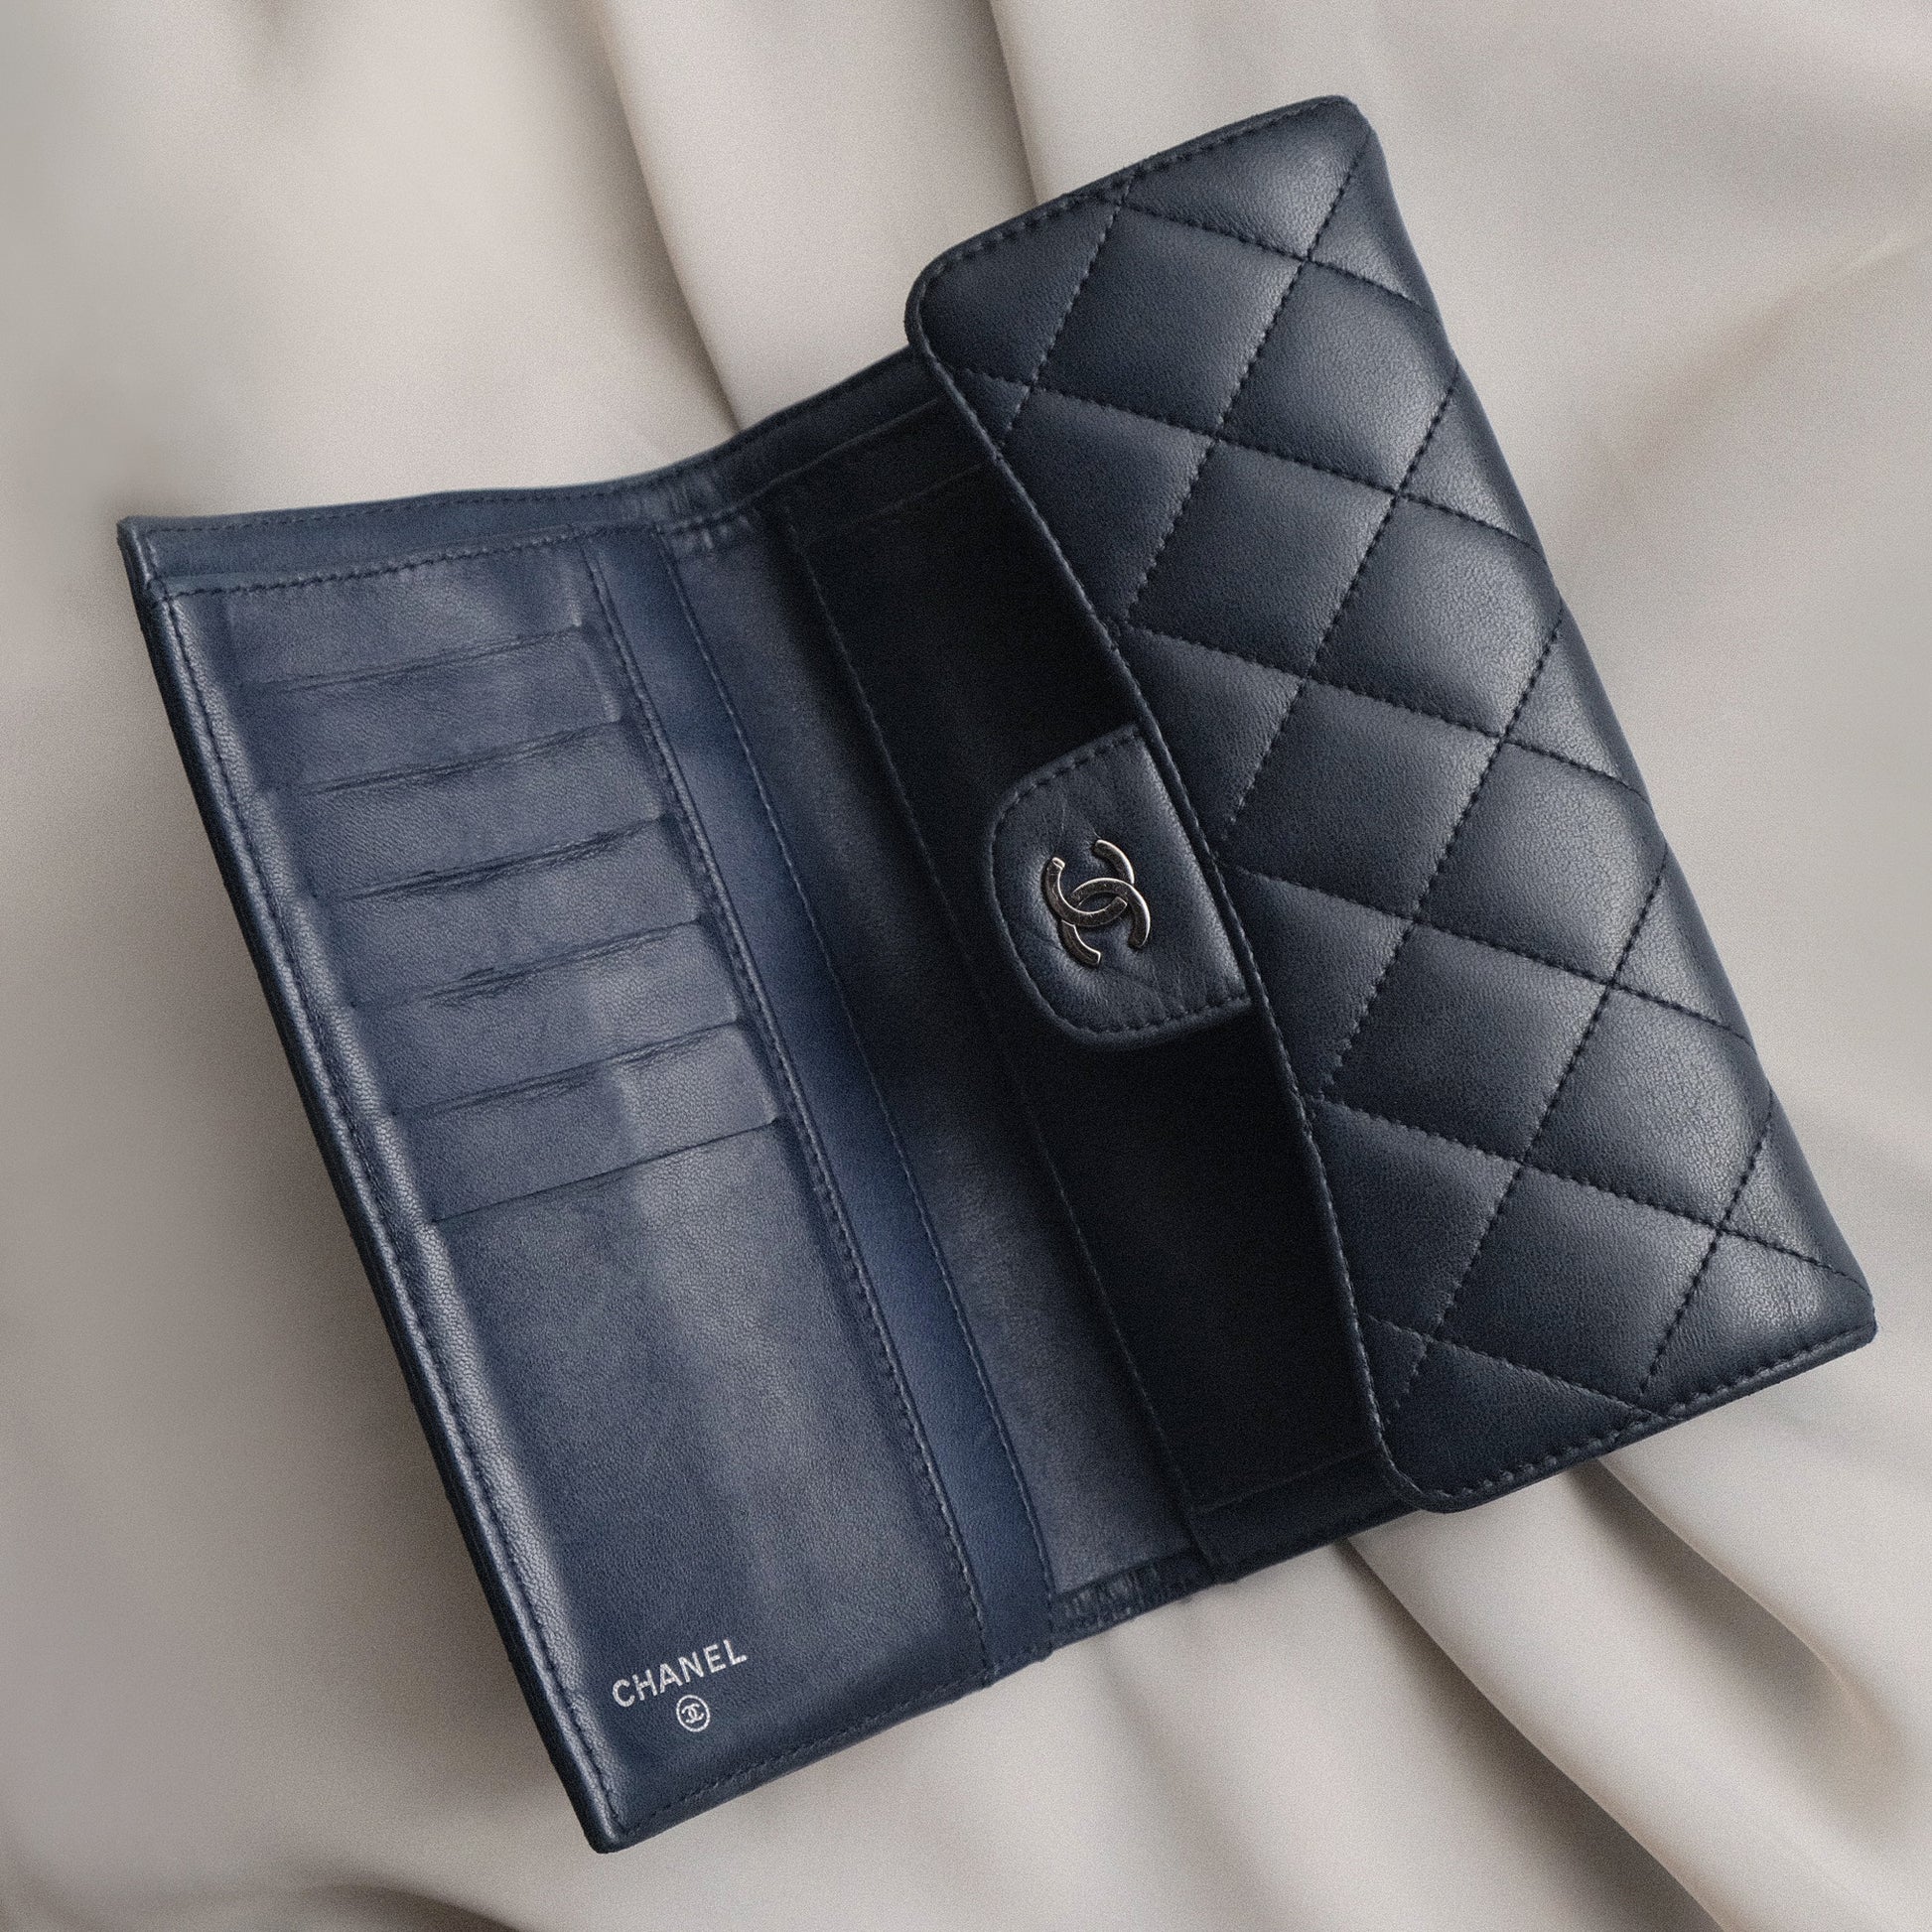 Chanel Vintage Matelasse Lambskin Flap Wallet WOC - The Tanpopo